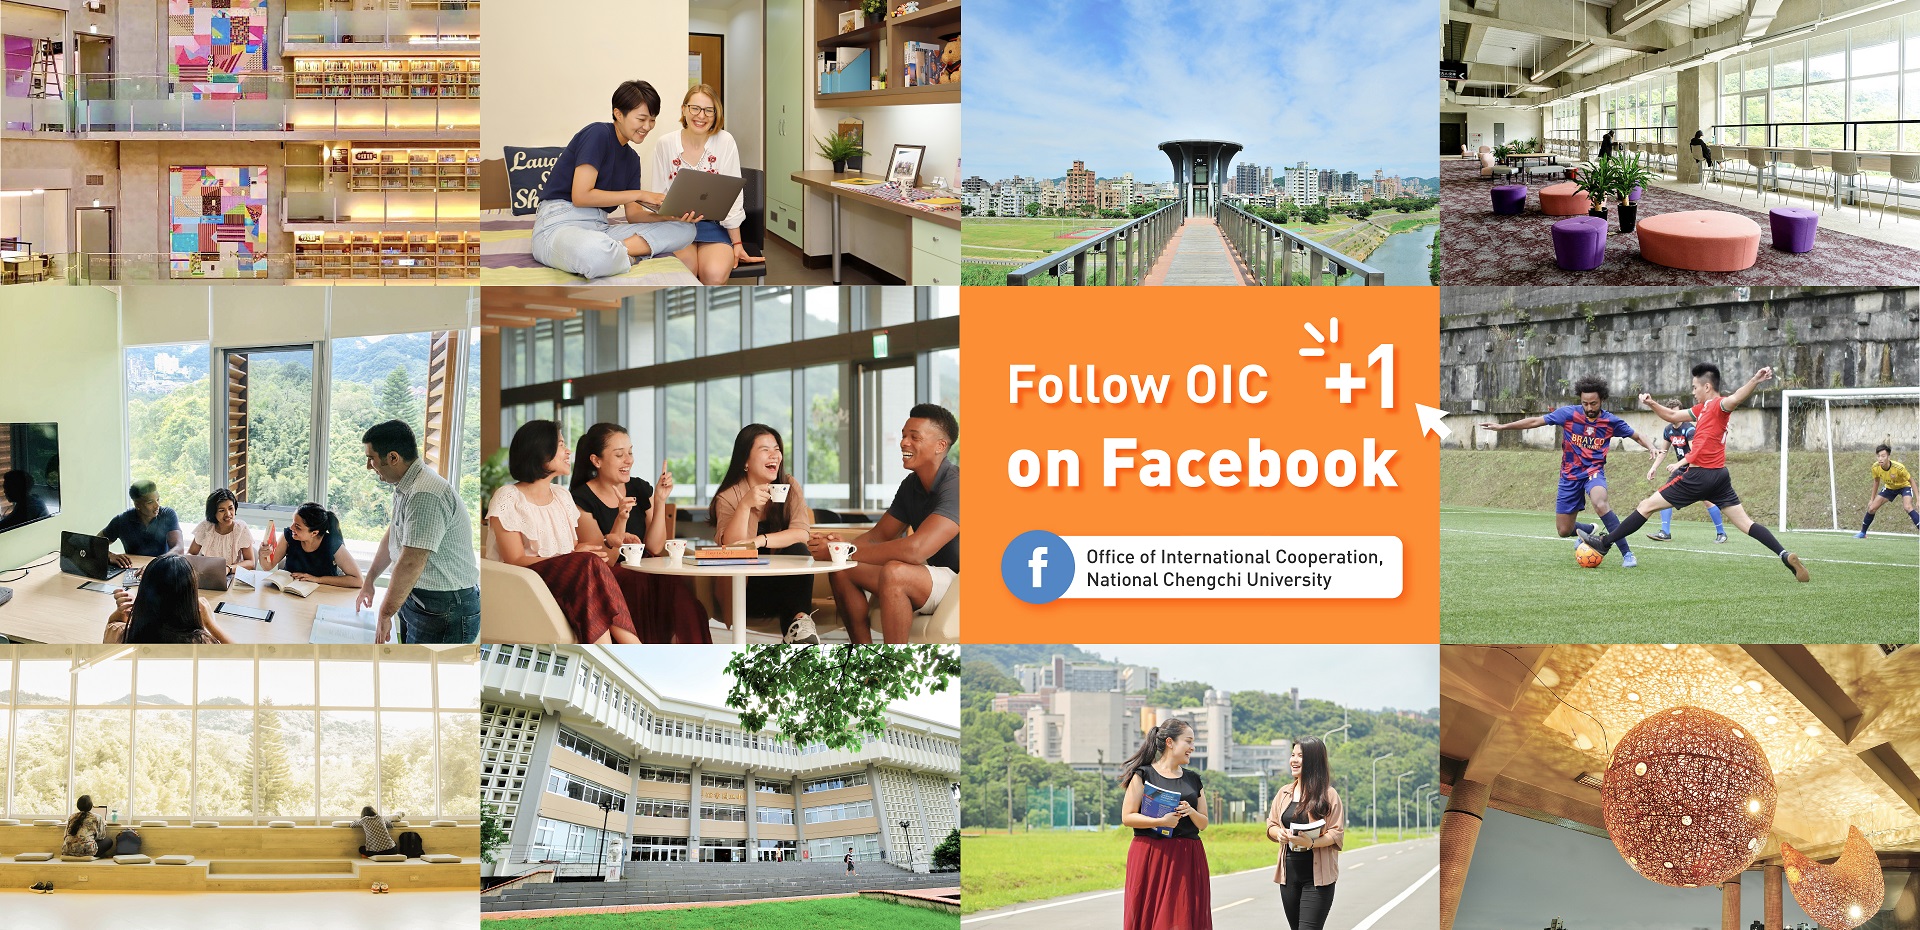 Follow OIC on Facebook